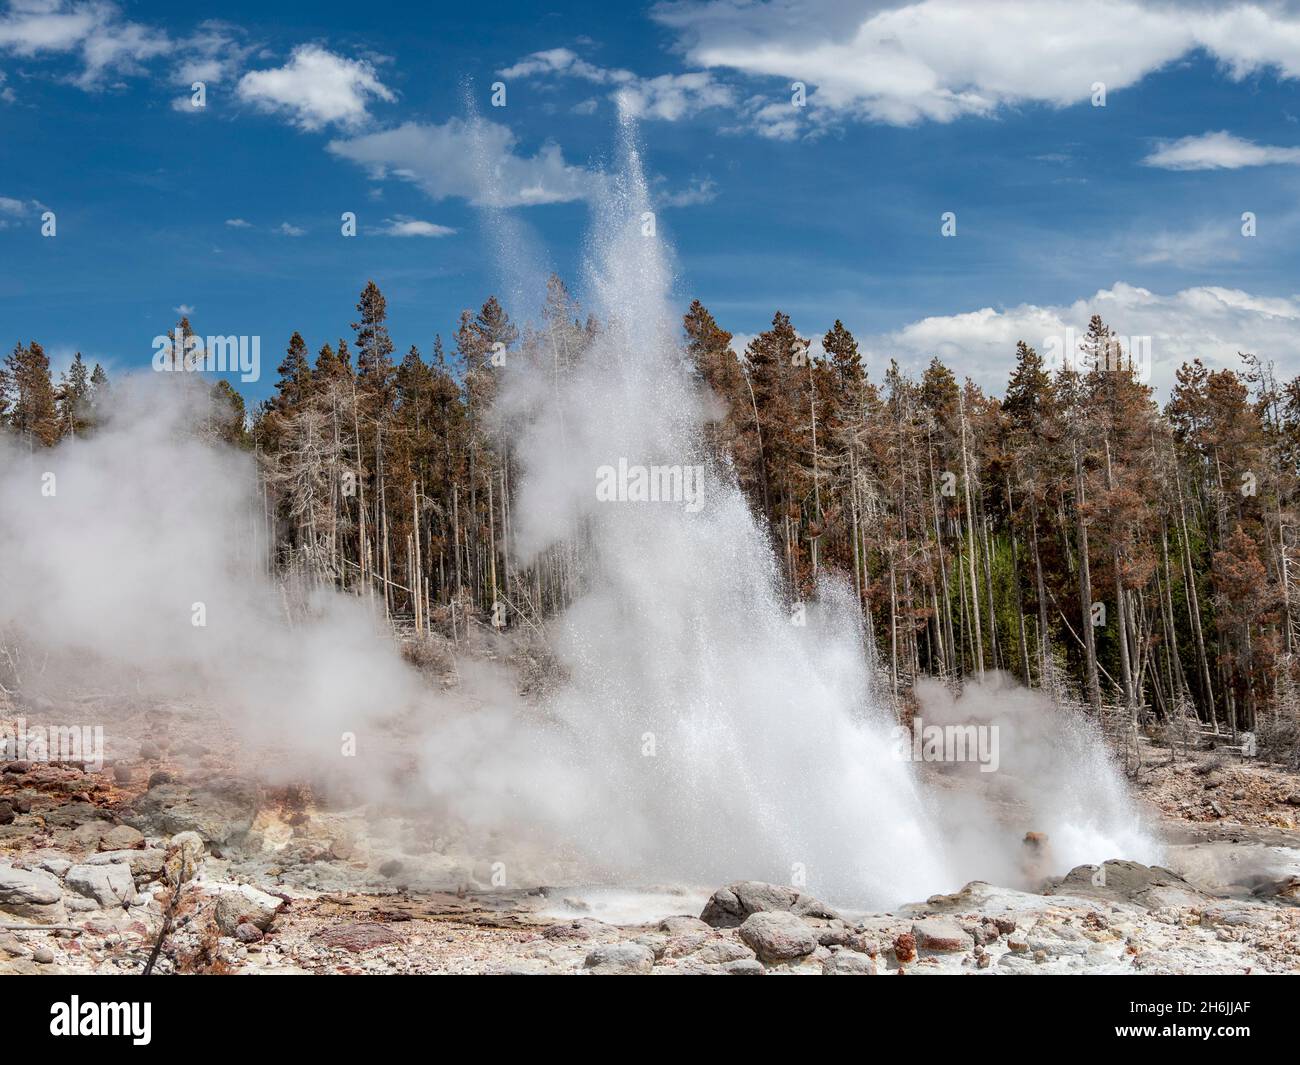 Steamboat Geyser, il geyser attivo più alto del mondo, si trova nel parco nazionale di Yellowstone, sito patrimonio dell'umanità dell'UNESCO, Wyoming, USA Foto Stock